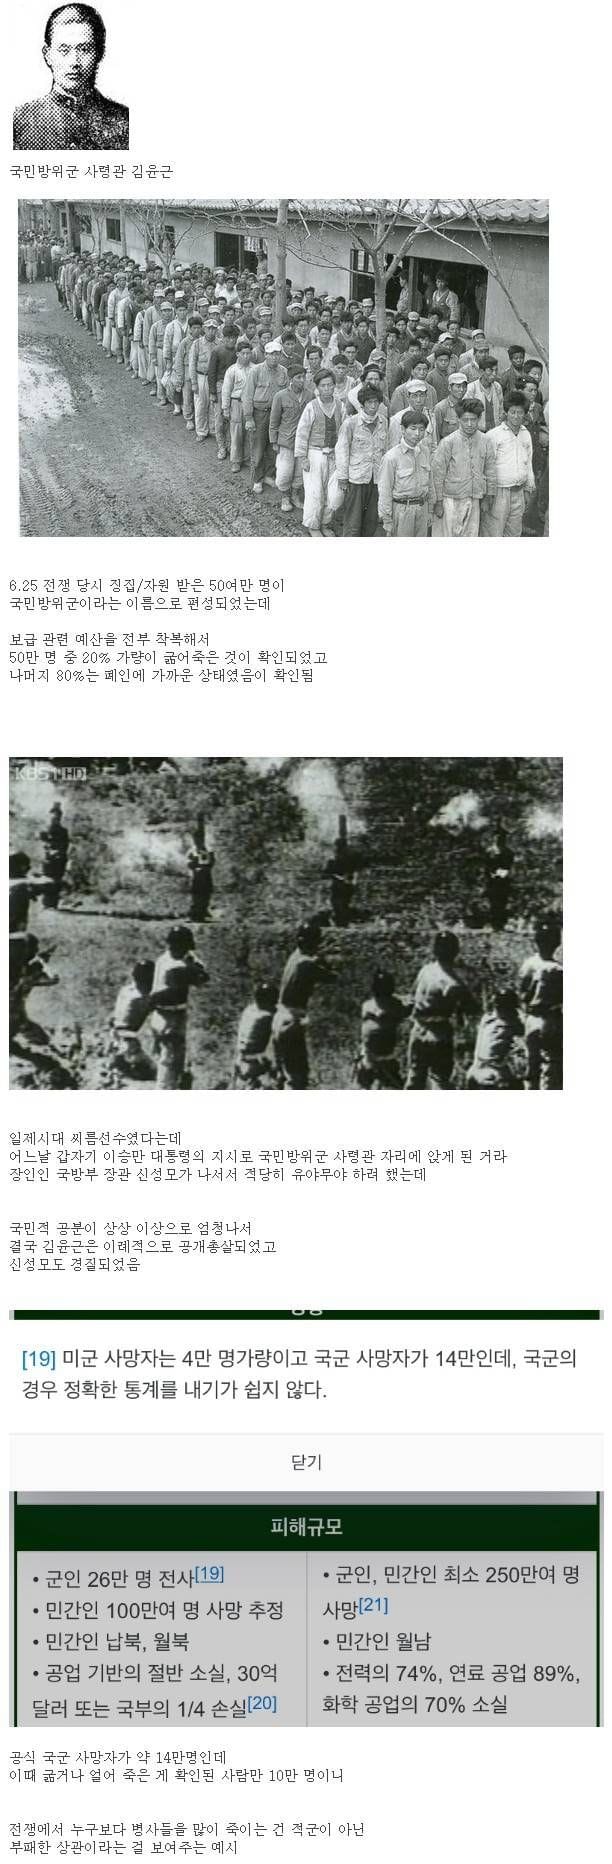 6.25 전쟁 때 한국군을 가장 많이 죽인 사람.